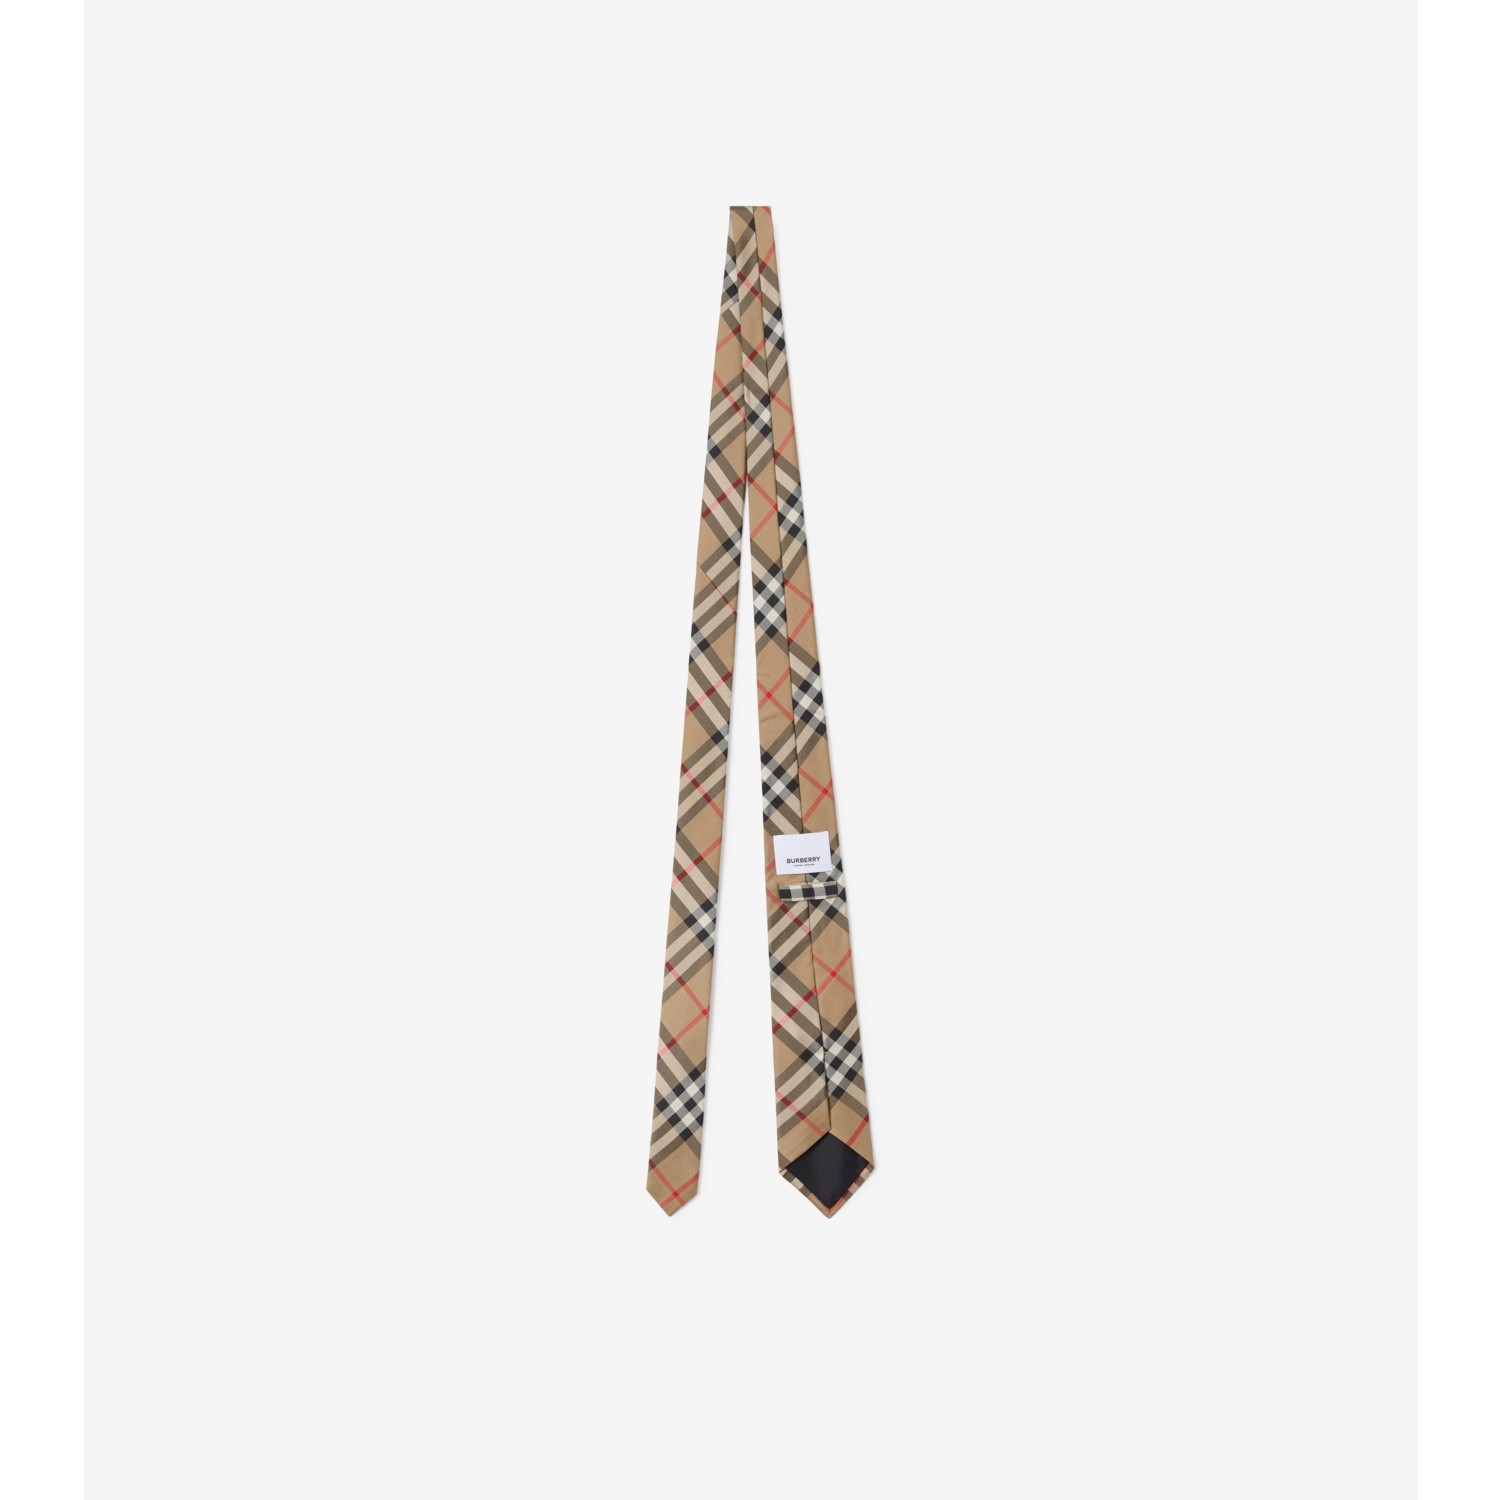 Cravate classique en soie Vintage check